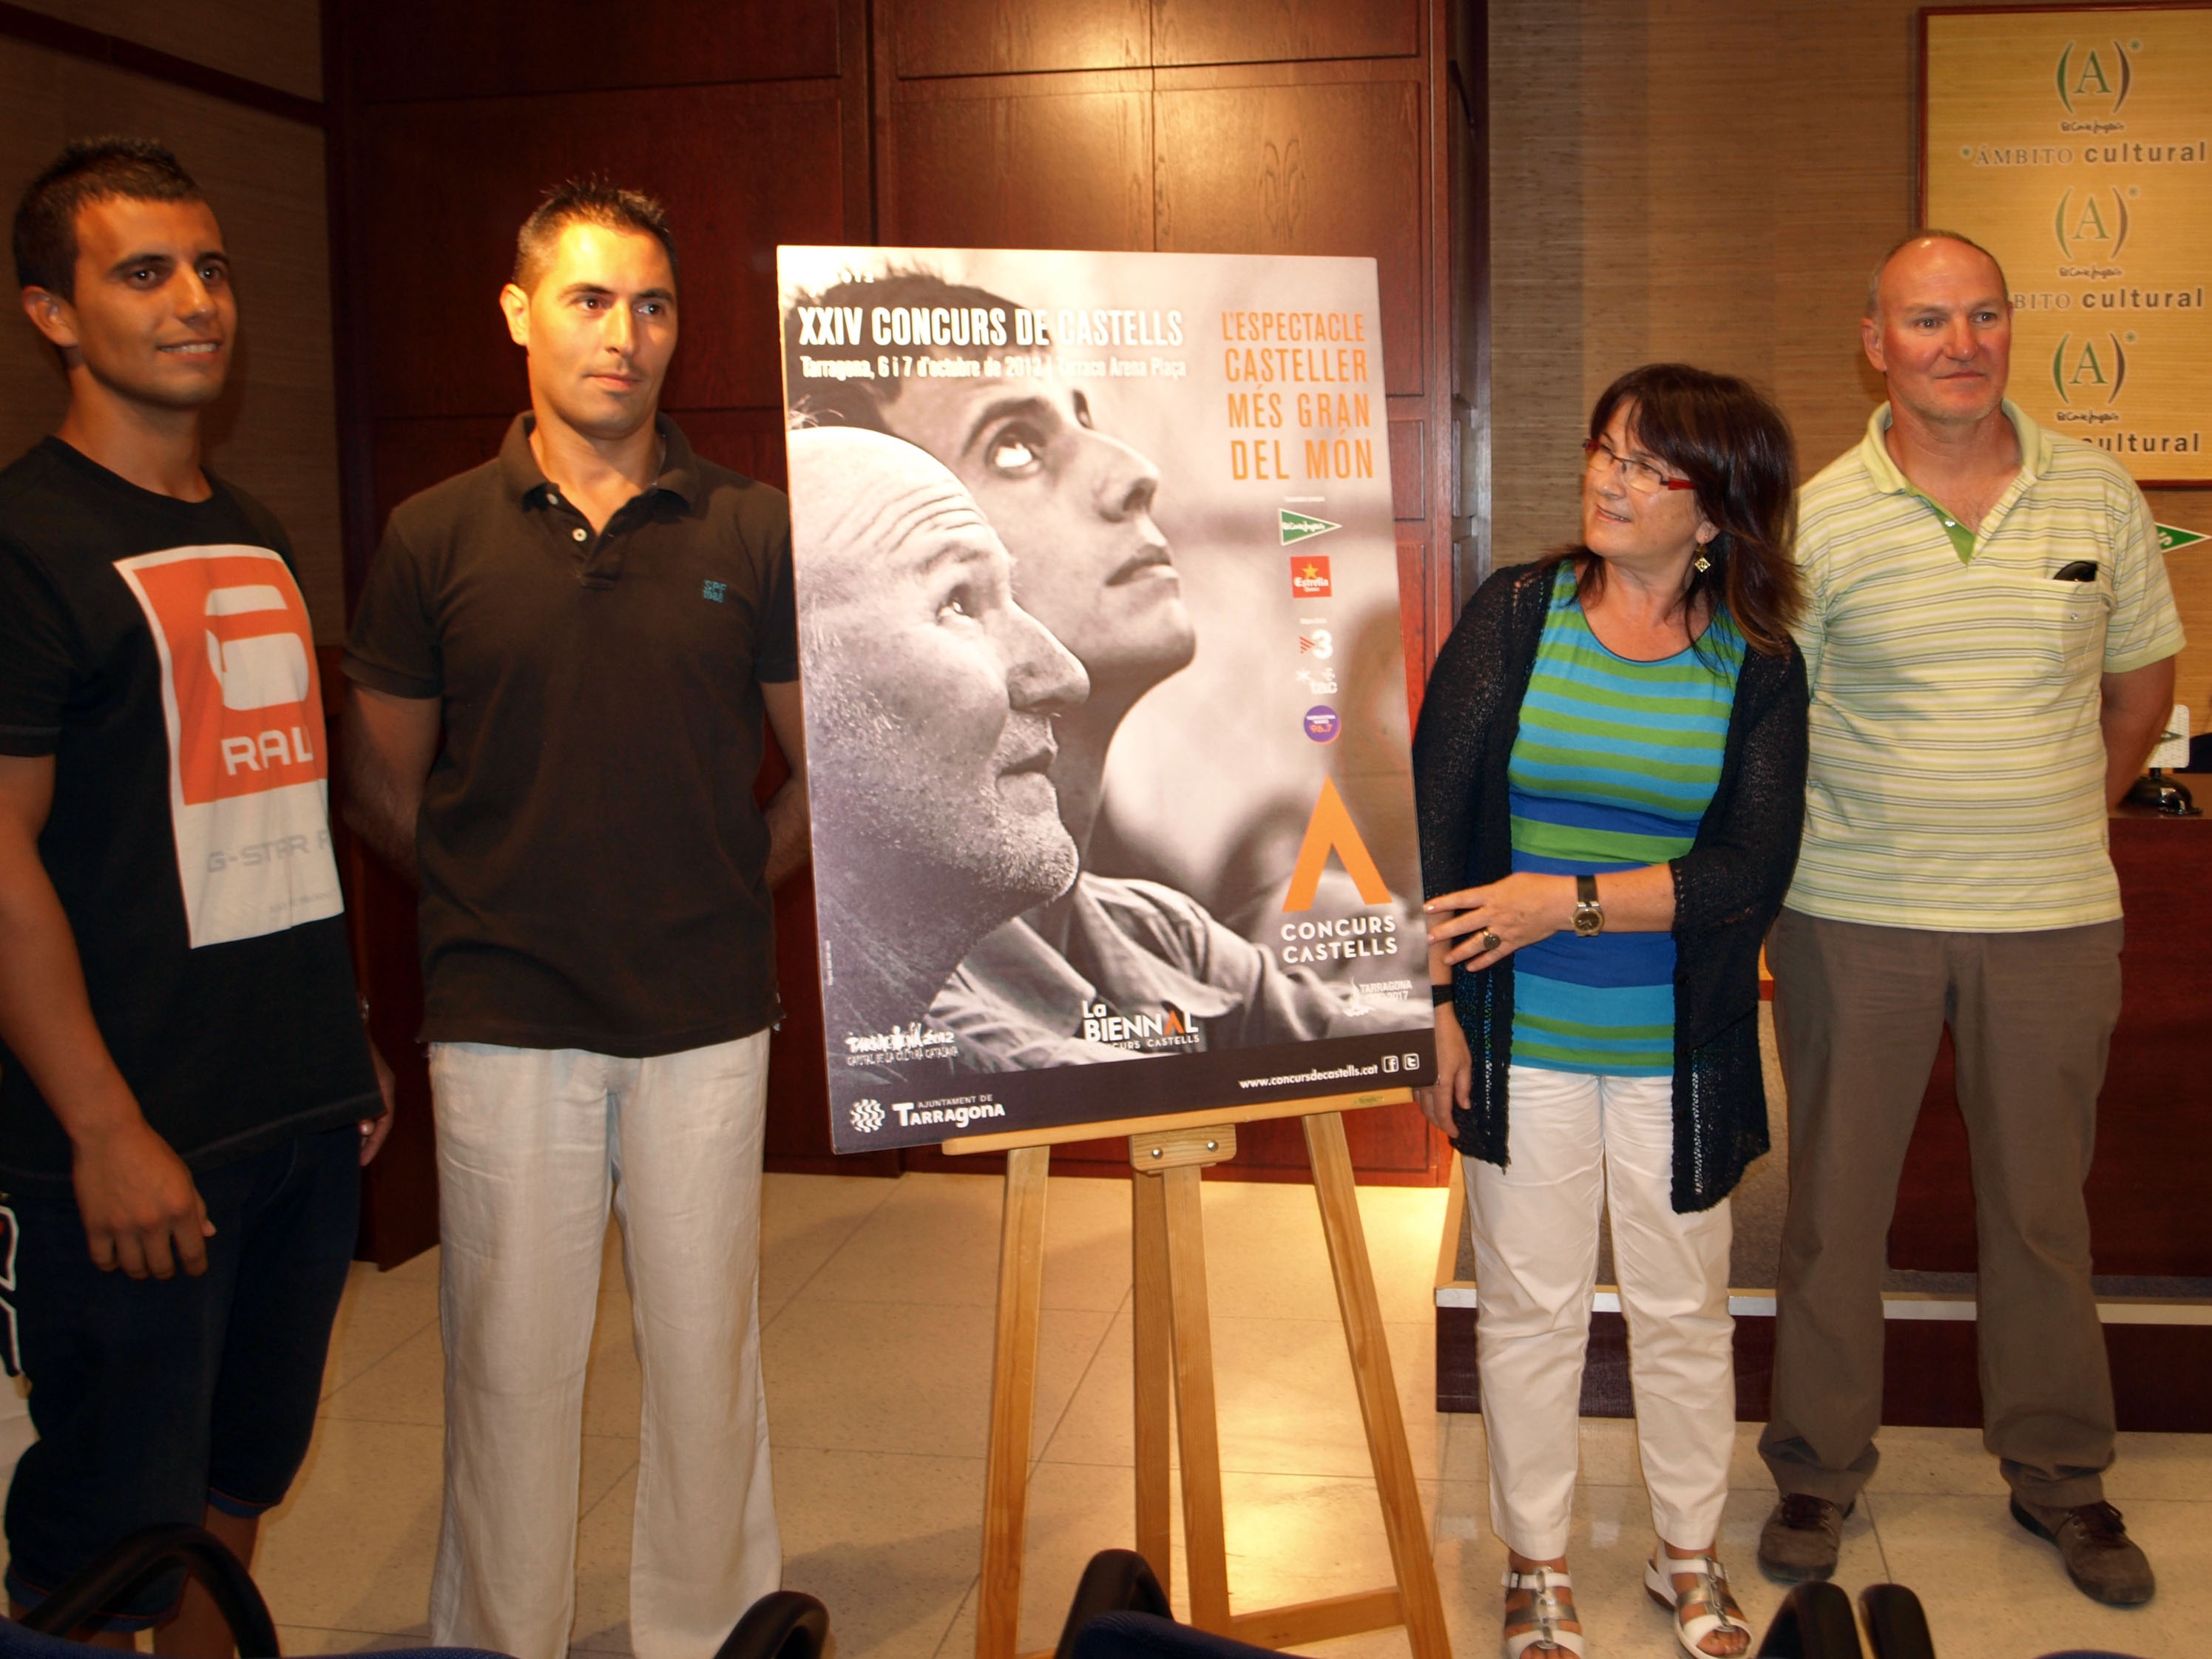 La consellera de Cultura, Carme Crespo, presentant la imatge del Concurs acompanyada de l'autor de la fotografia i dels protagonistes del cartell